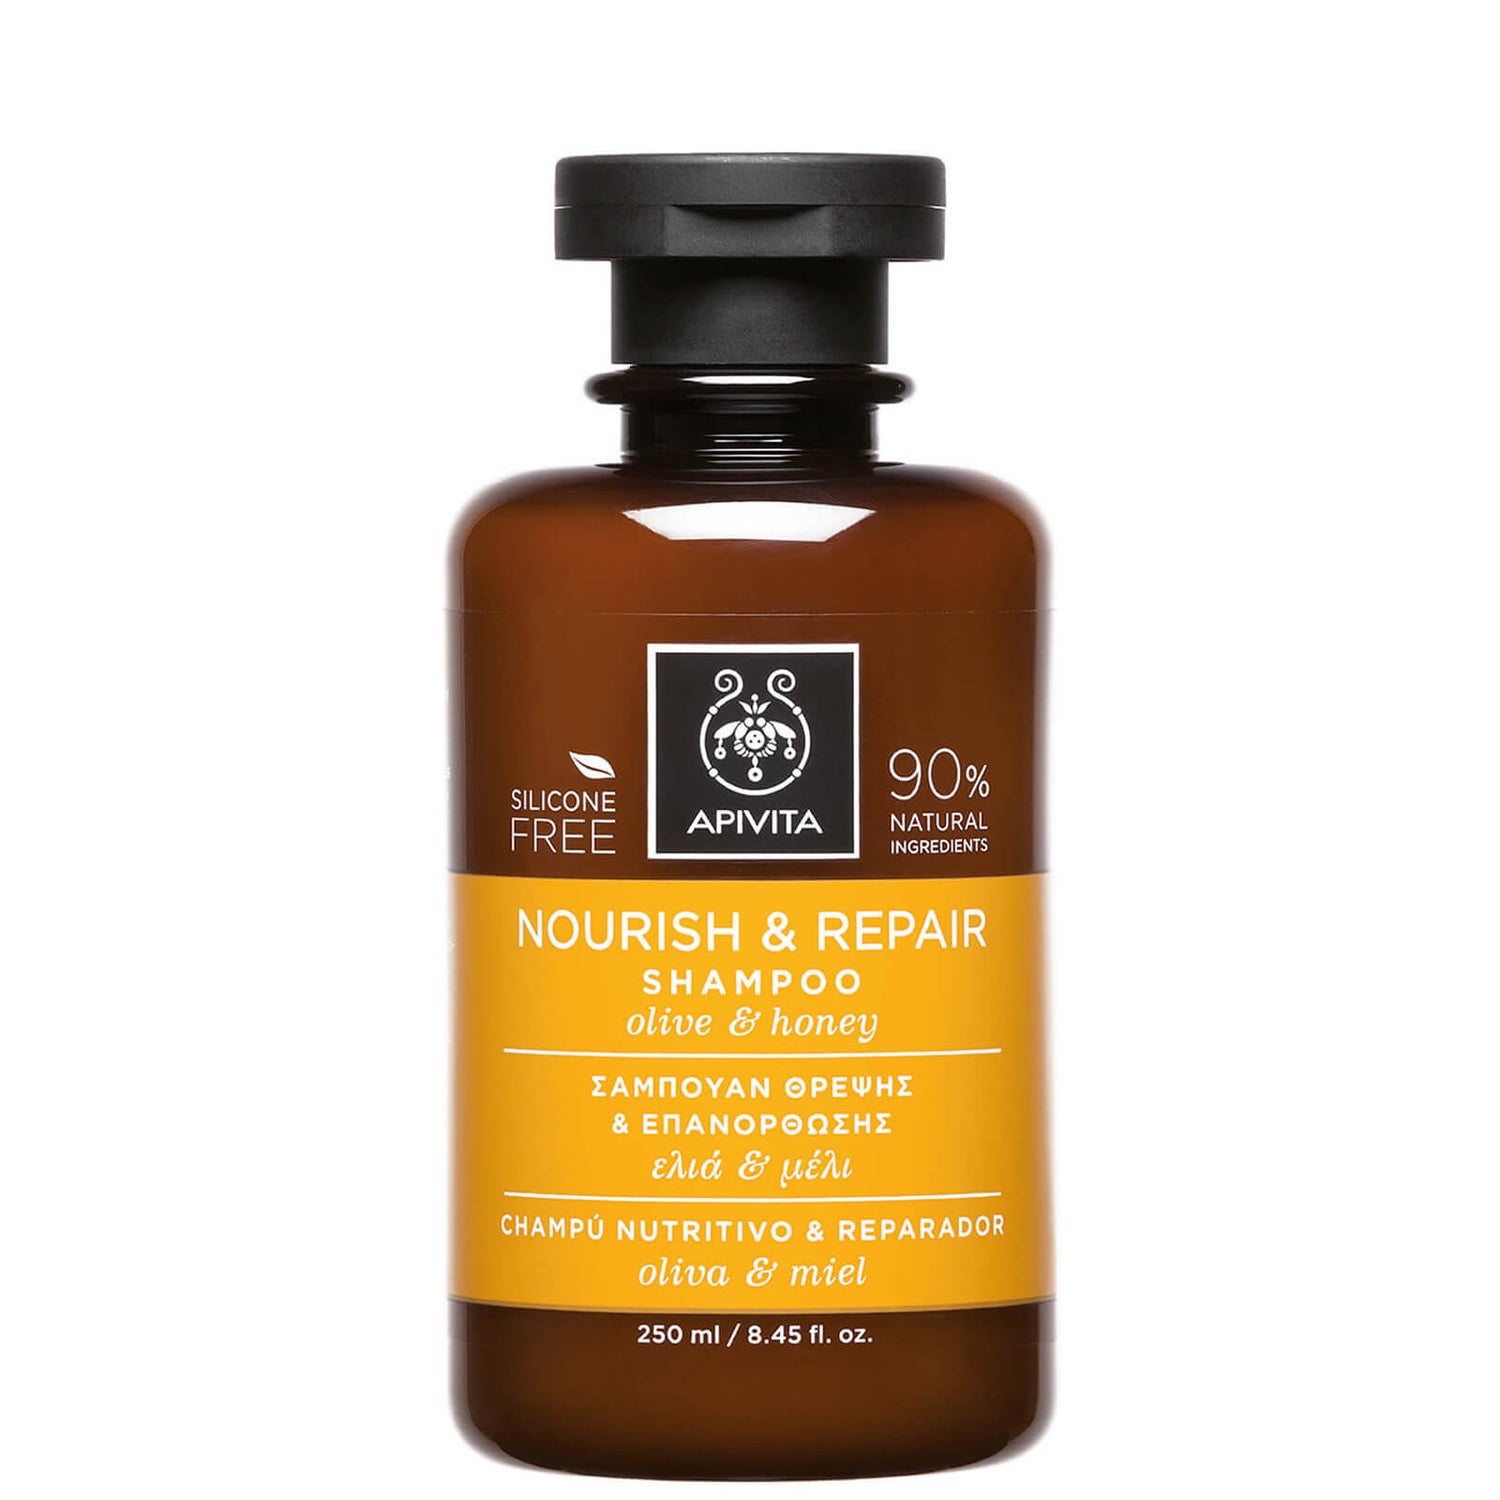 Питательный восстанавливающий шампунь APIVITA Holistic Hair Care Nourish & Repair Shampoo - Olive & Honey 250 мл